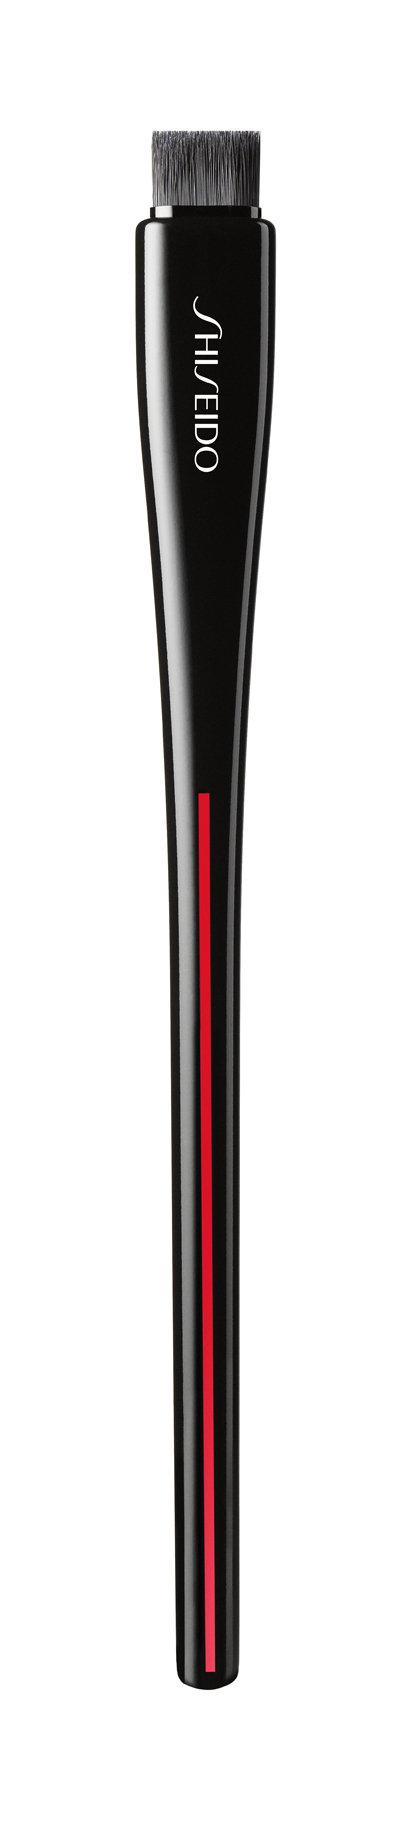 фото Кисть для подводки и бровей shiseido yane hake precision eye brush